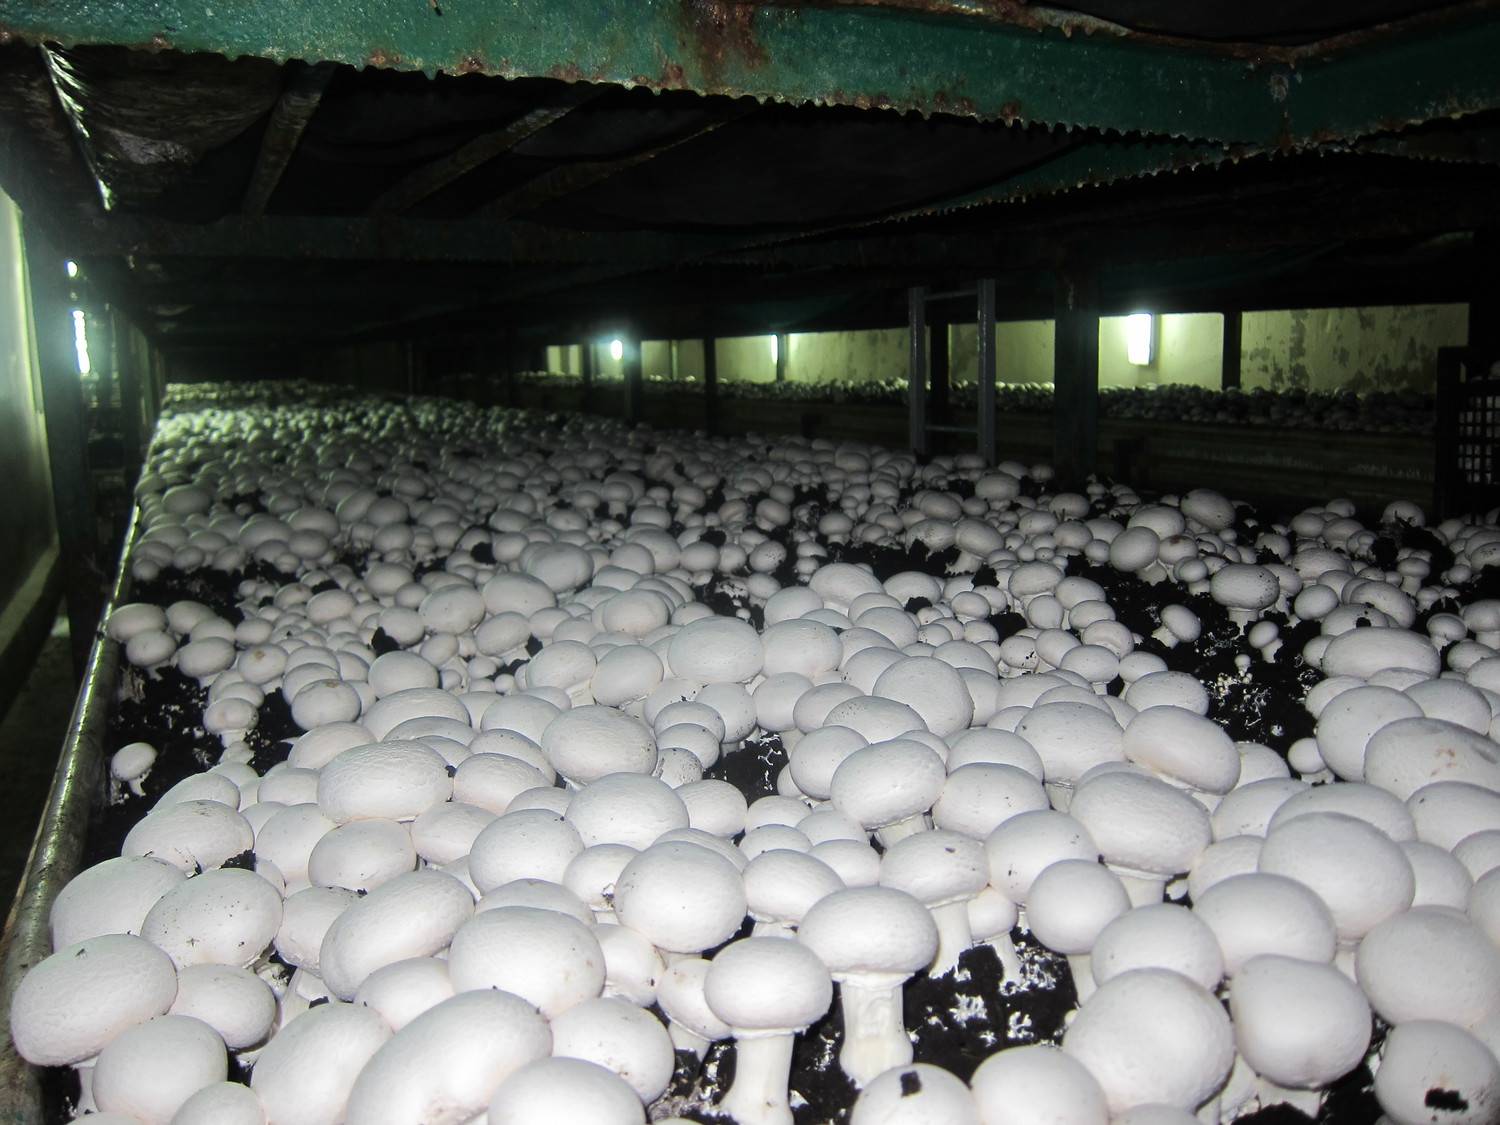 7 рекомендаций для выращивания шампиньонов в домашних условиях — гарантированный урожай грибов